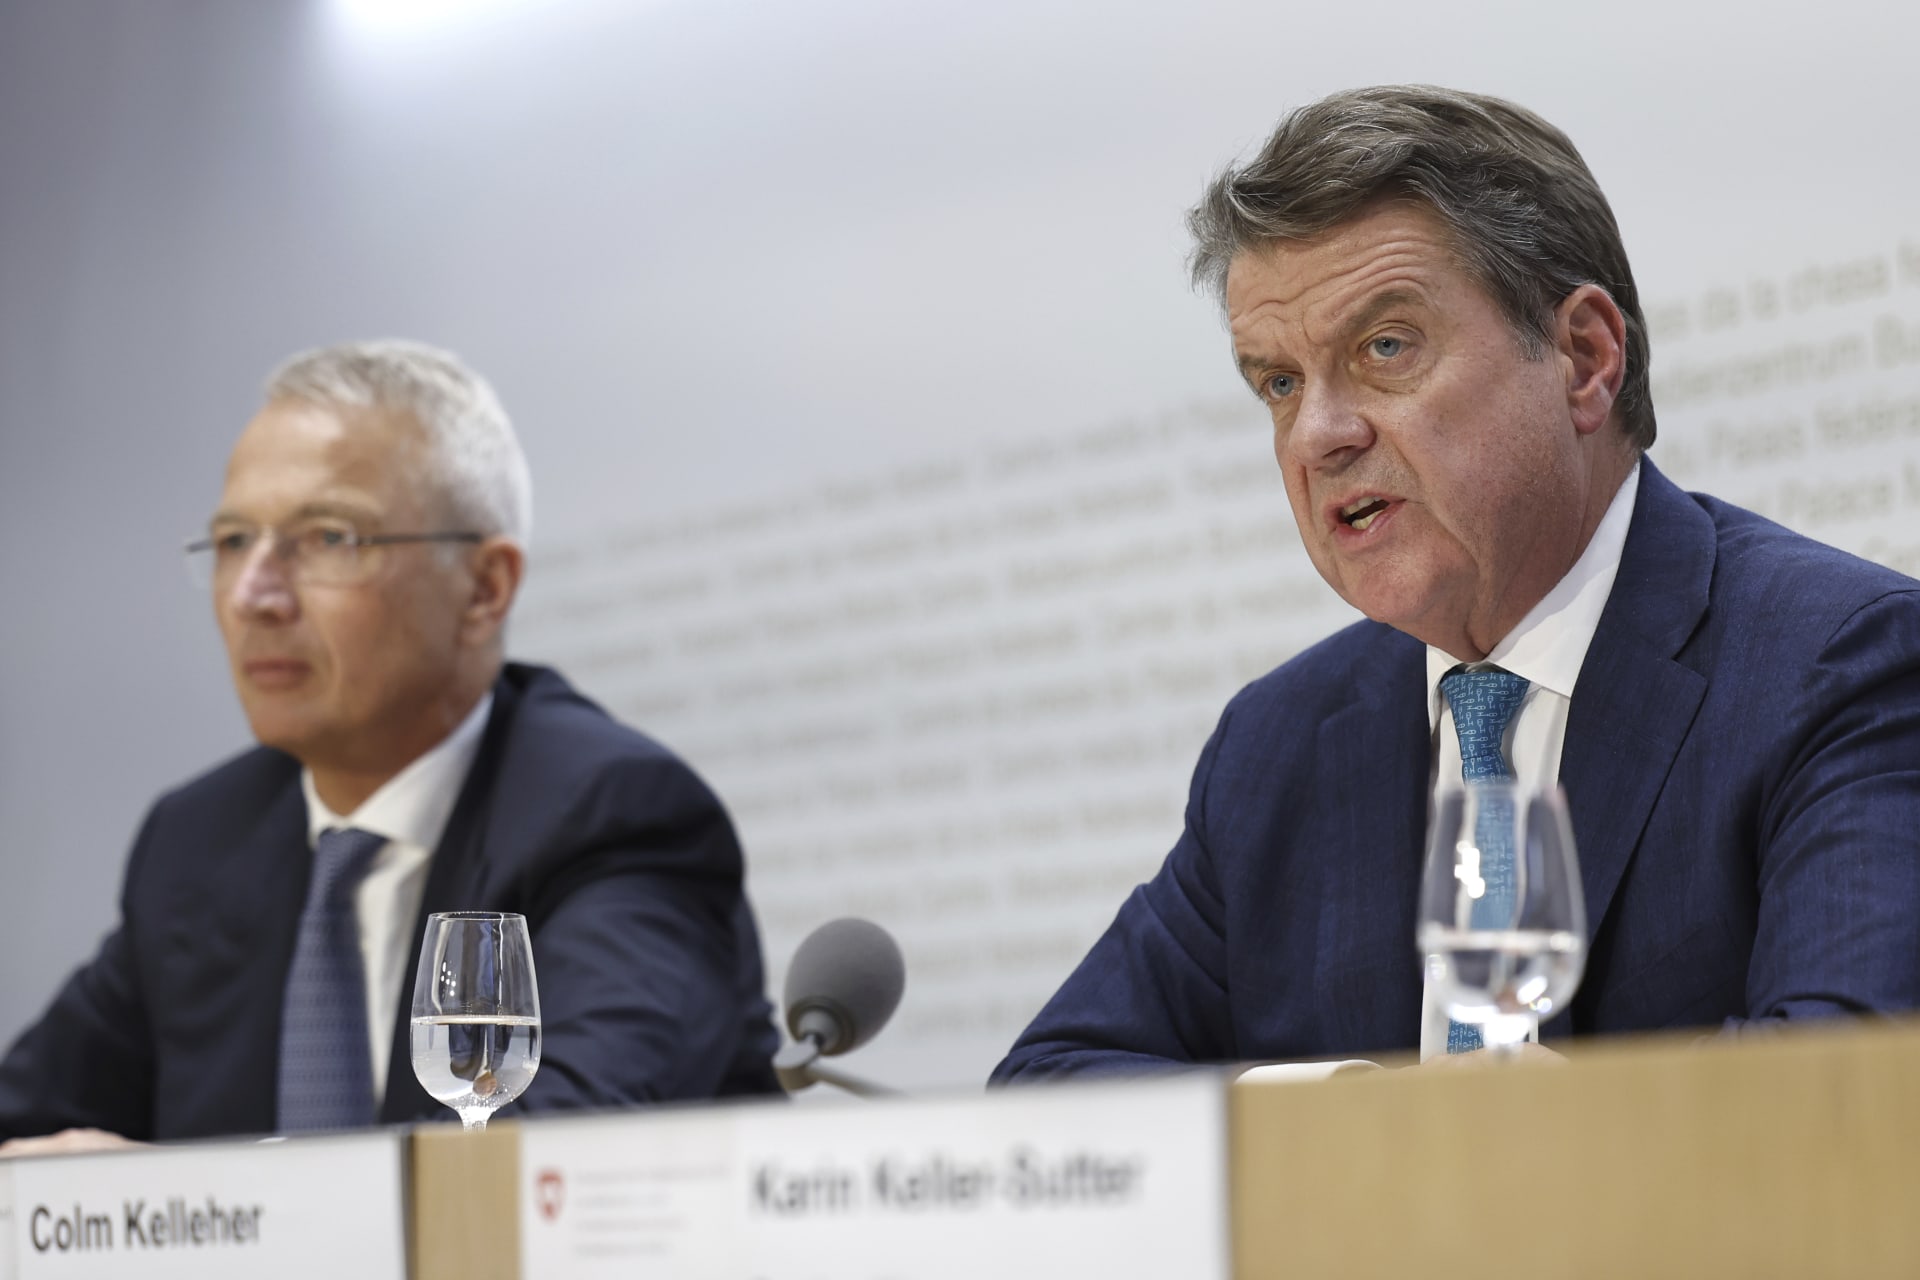 Předseda představenstva UBS Colm Kelleher (vravo) a jeho protějšek z Credit Suisse Axel Lehmann